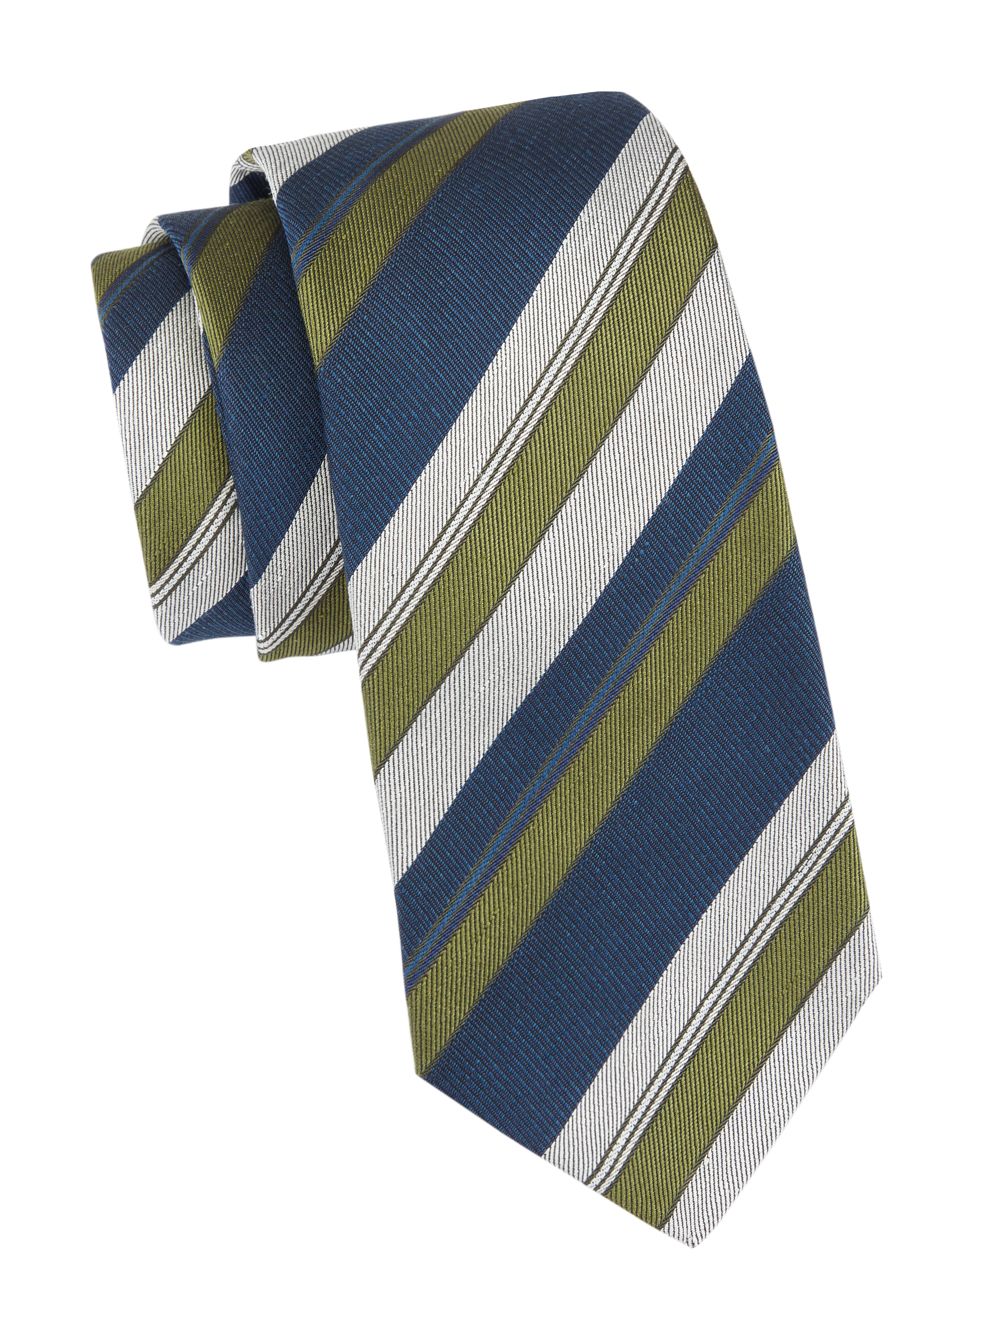 Шелковый галстук в полоску Kiton, зеленый галстук в полоску зеленый